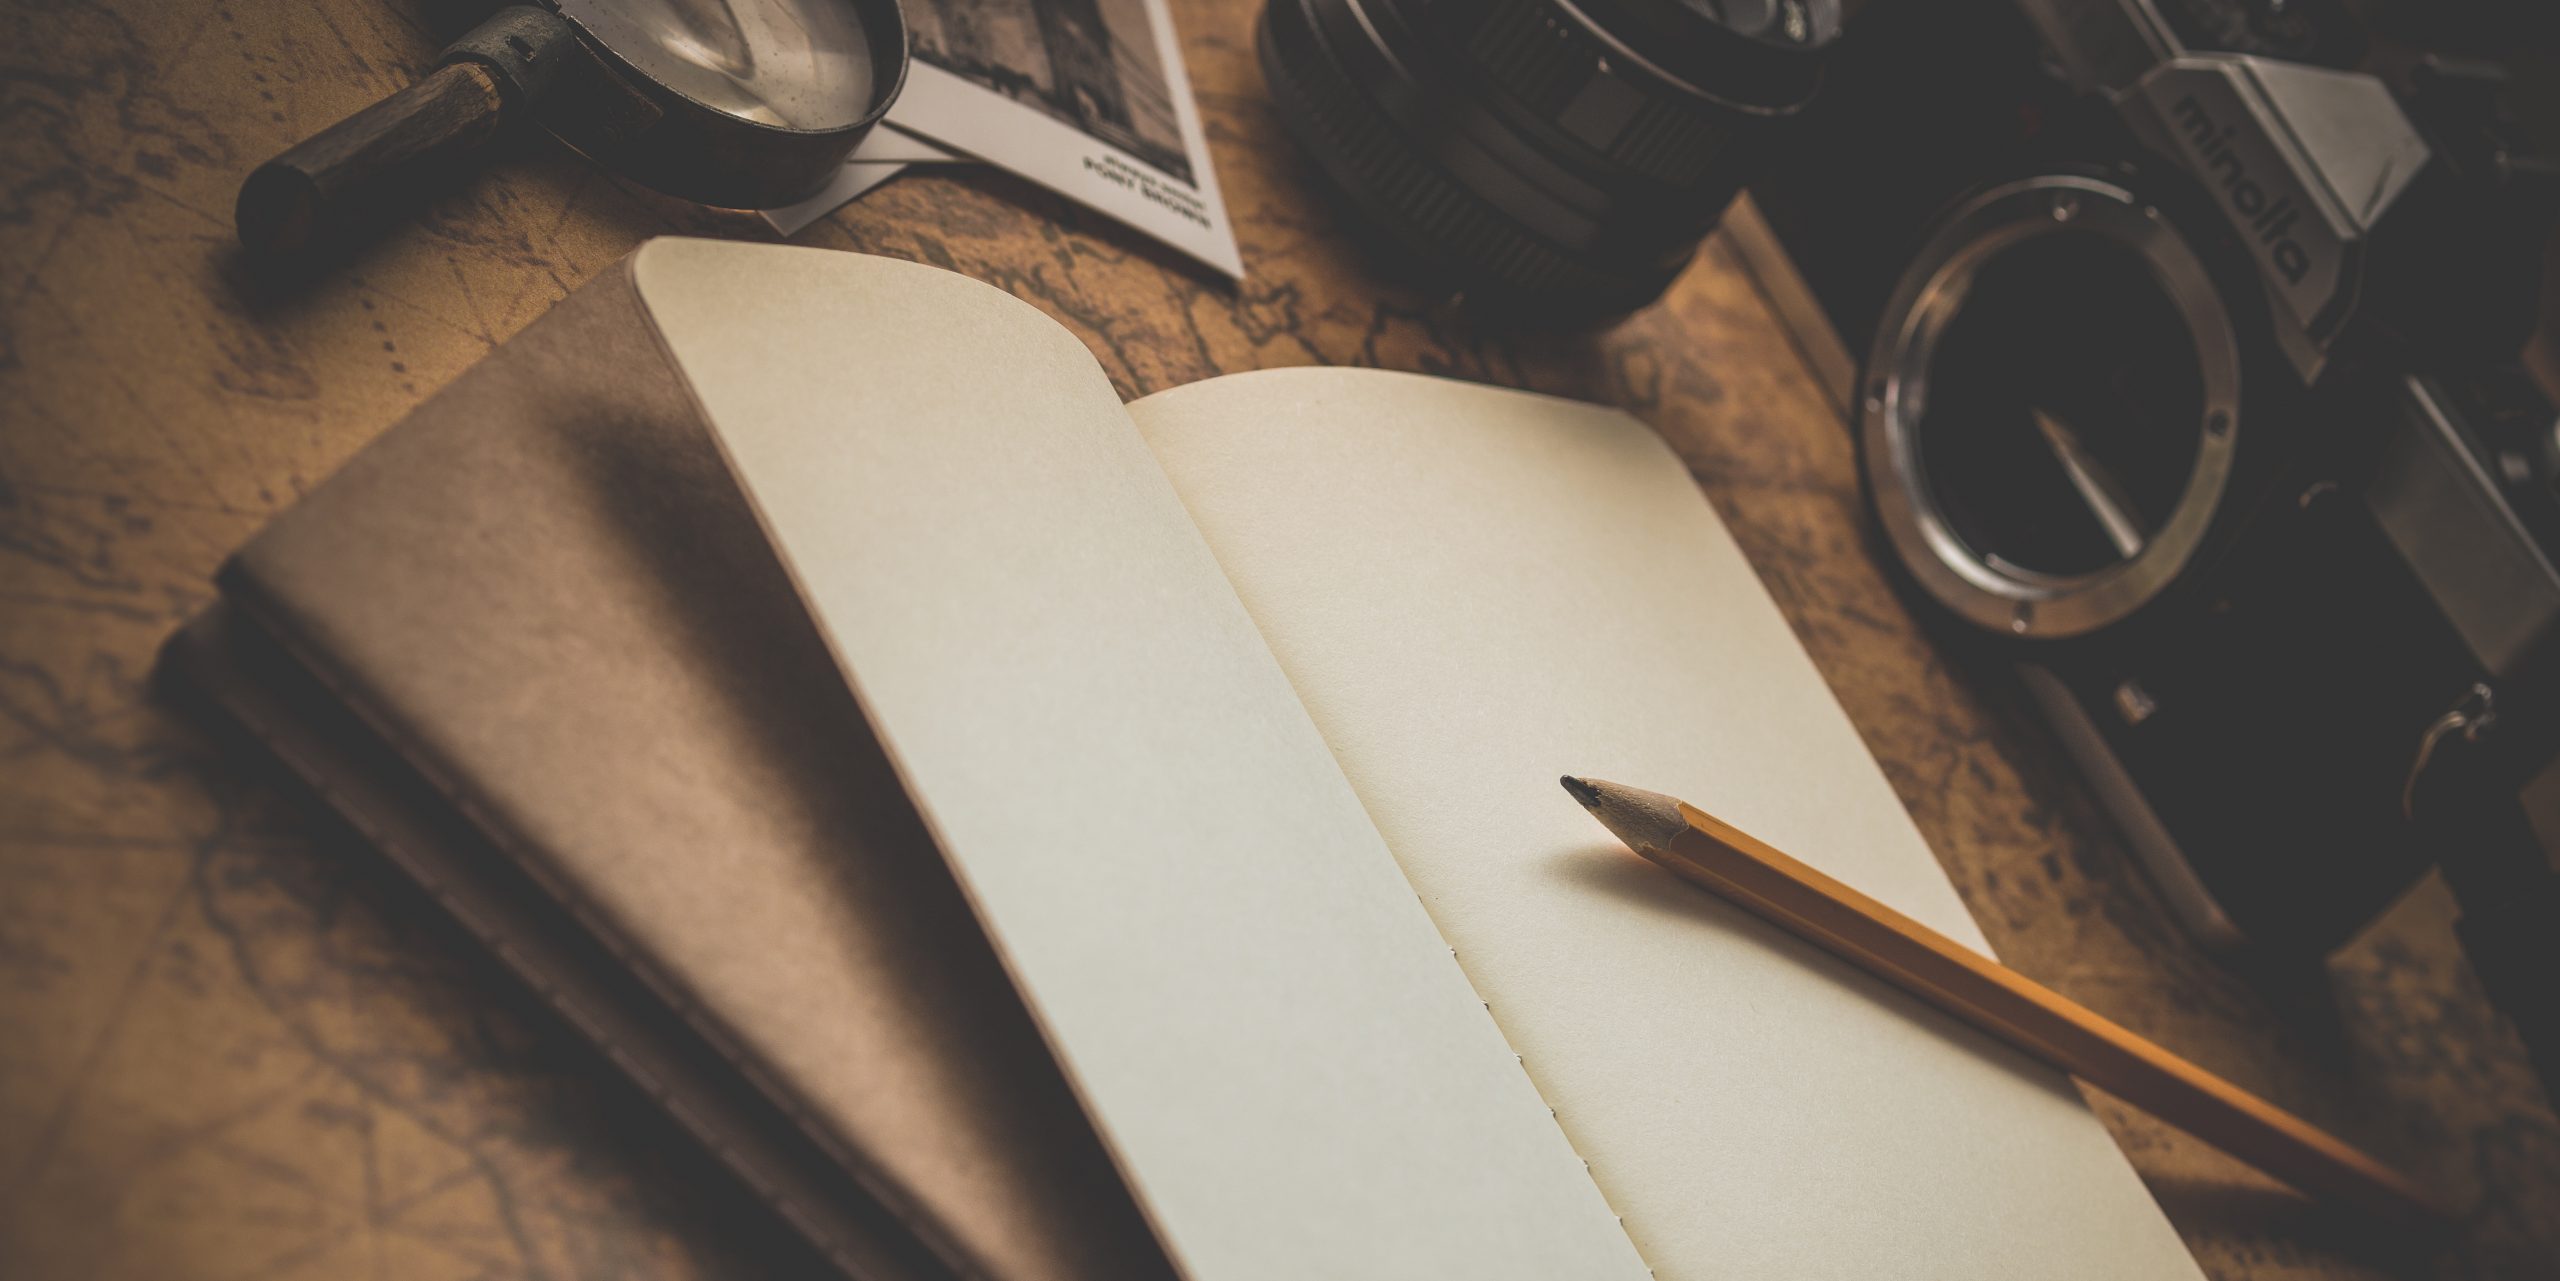 Что можно написать в личном дневнике и как его оформлять